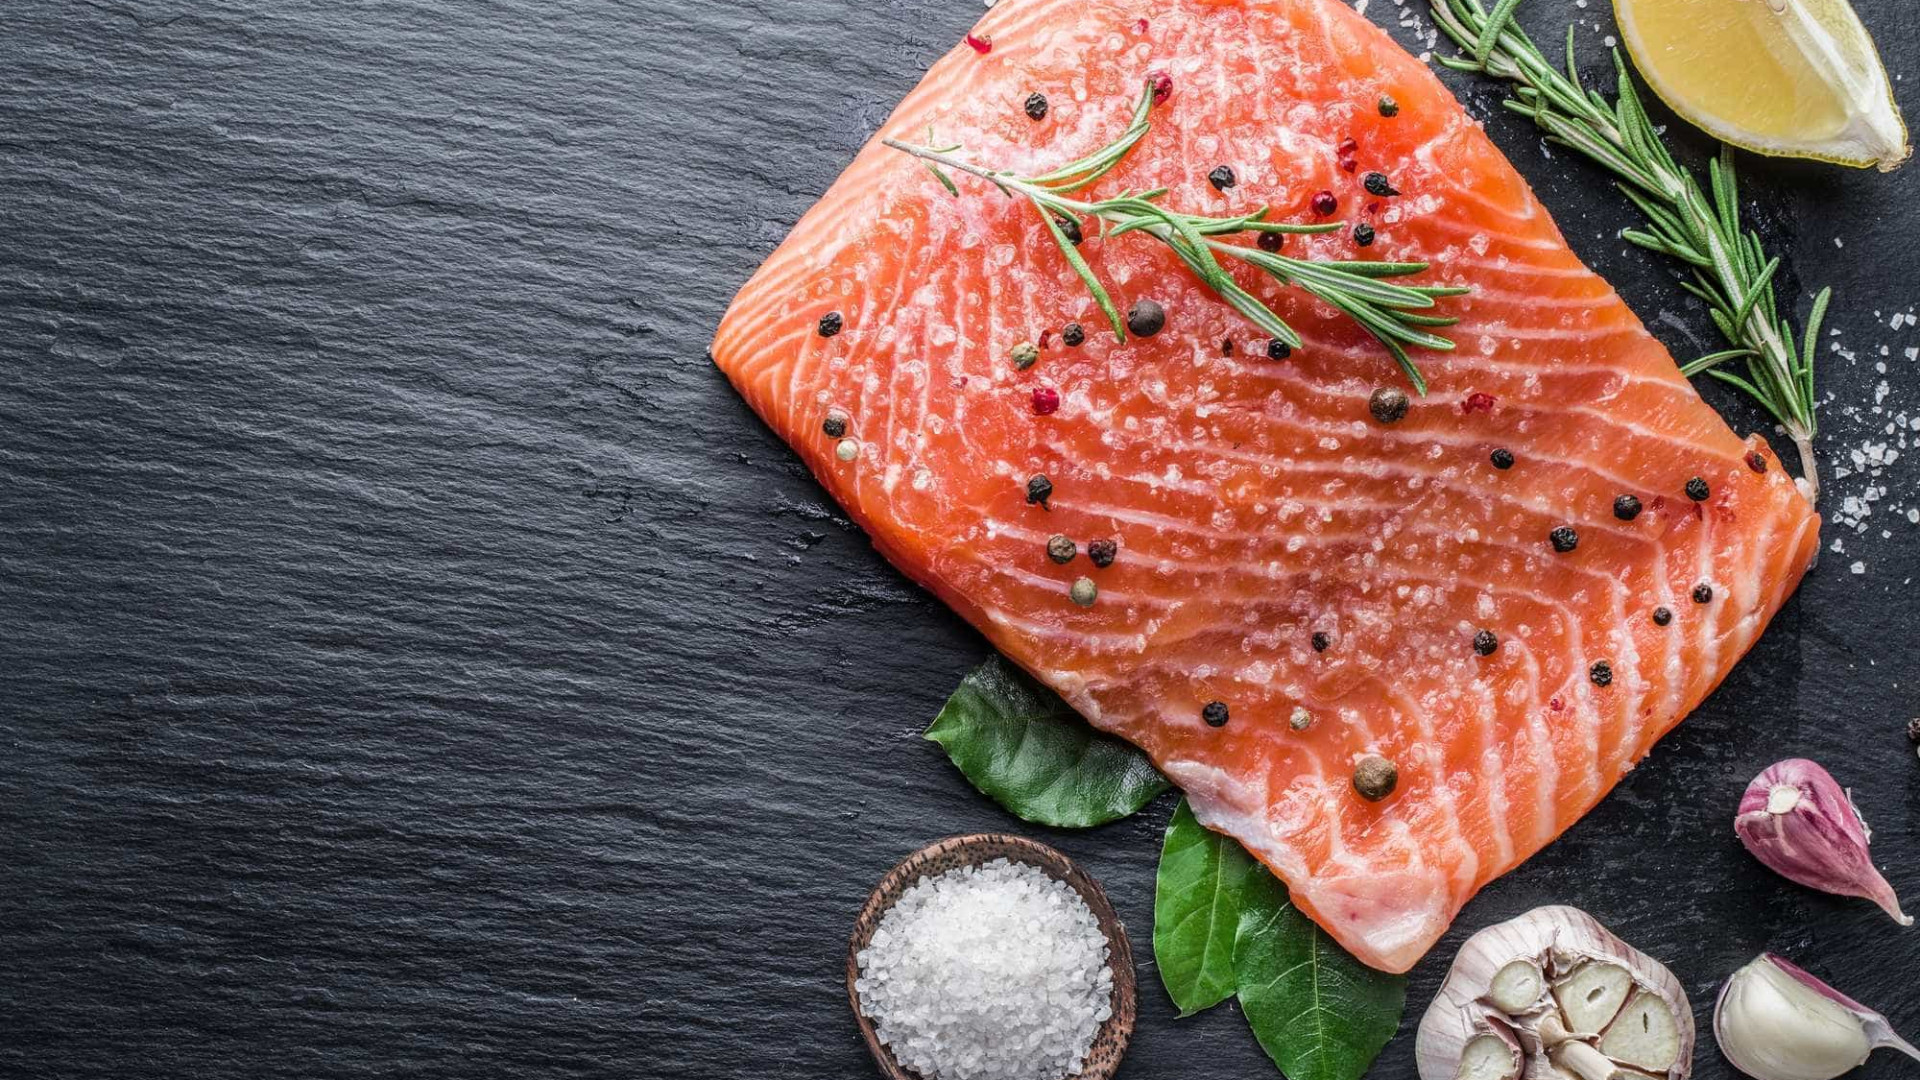 O que é melhor: comer peixe cru ou cozido?